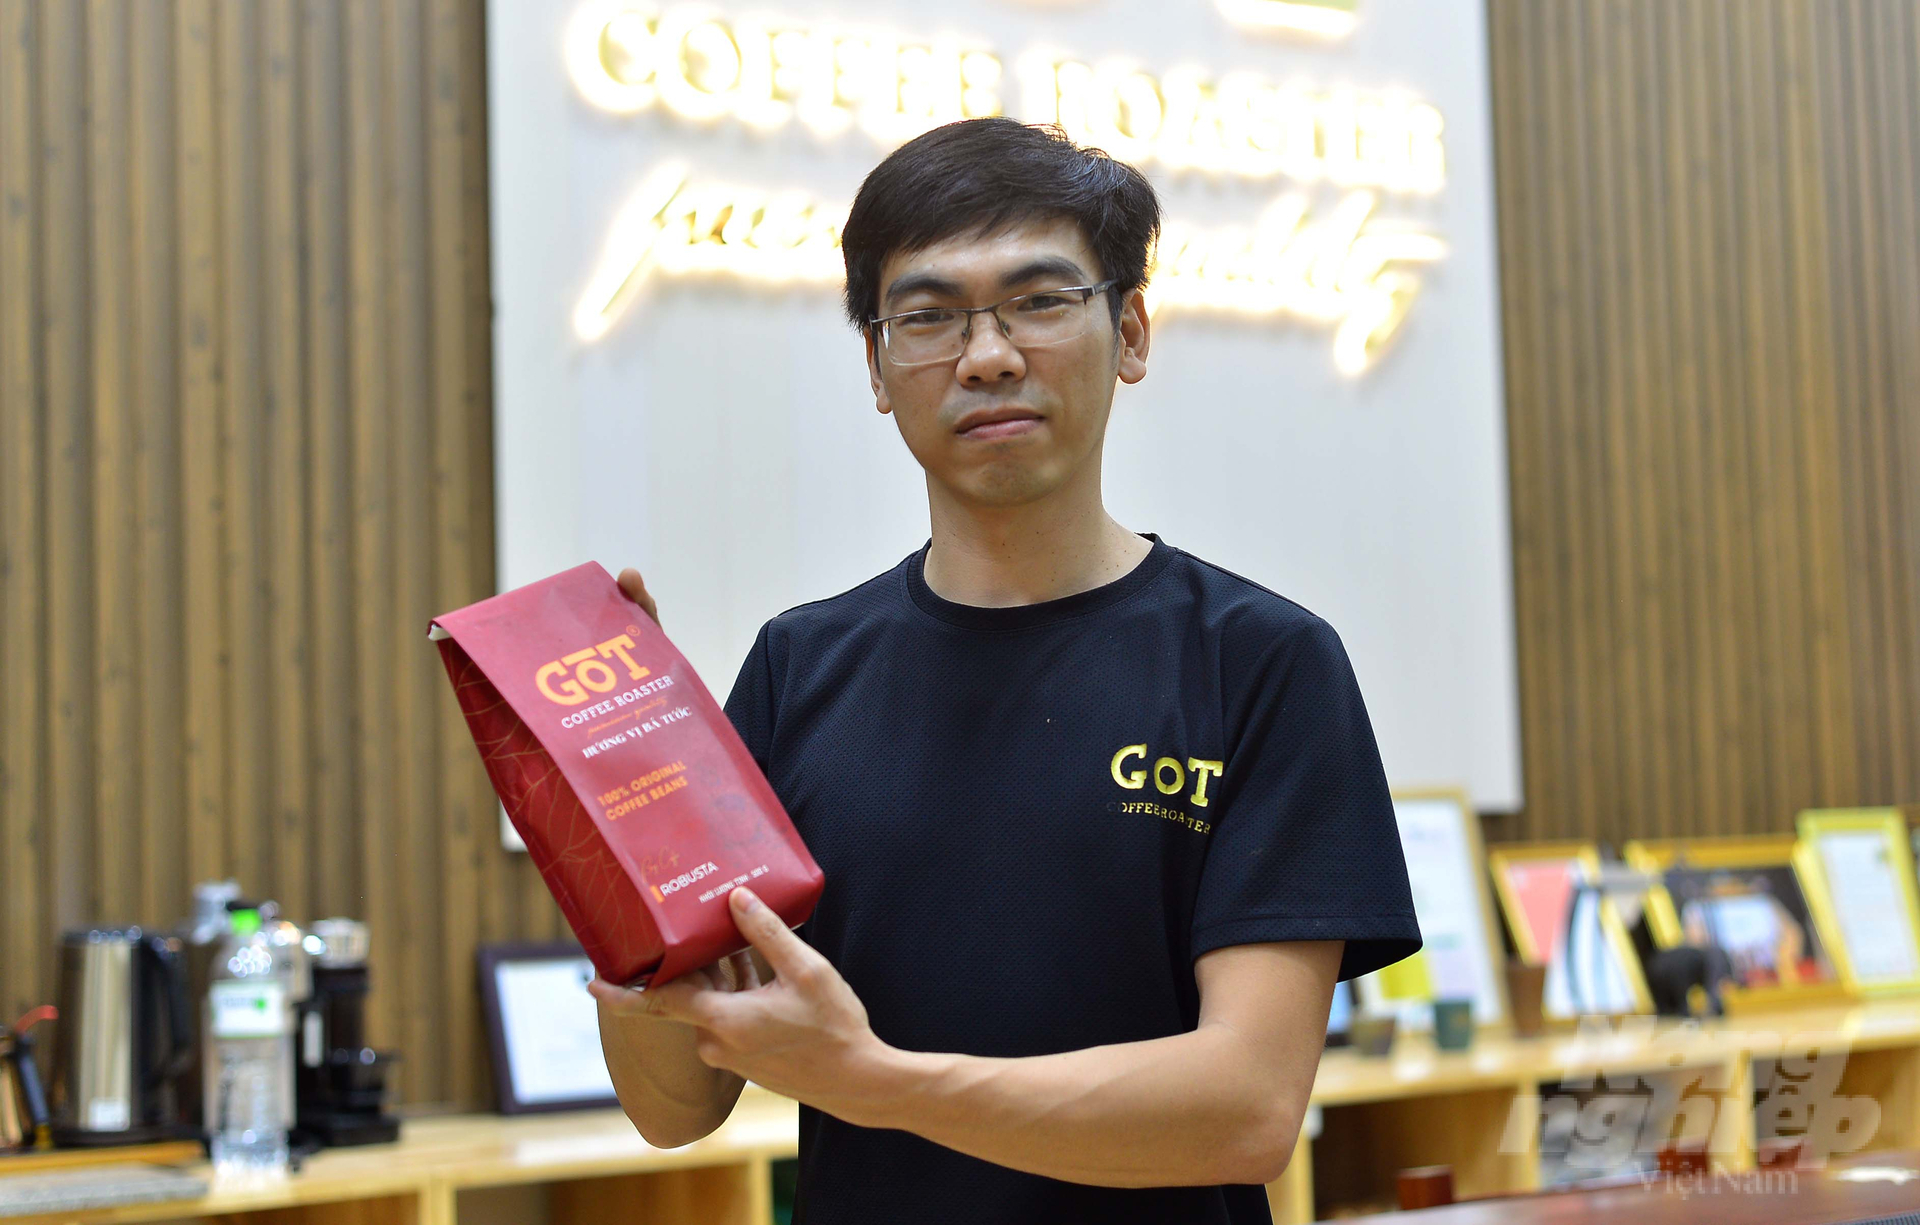 Công ty TNHH Nguyên Phúc Nông (đơn vị sản xuất cà phê với thương hiệu Got Coffee, đóng tại xã Lộc Thành, huyện Bảo Lâm, Lâm Đồng) tổ chức xây dựng vùng cà phê hữu cơ và thực hiện quy trình chế biến hiện đại để đảm bảo chất lượng sản phẩm. Ảnh: Minh Hậu.